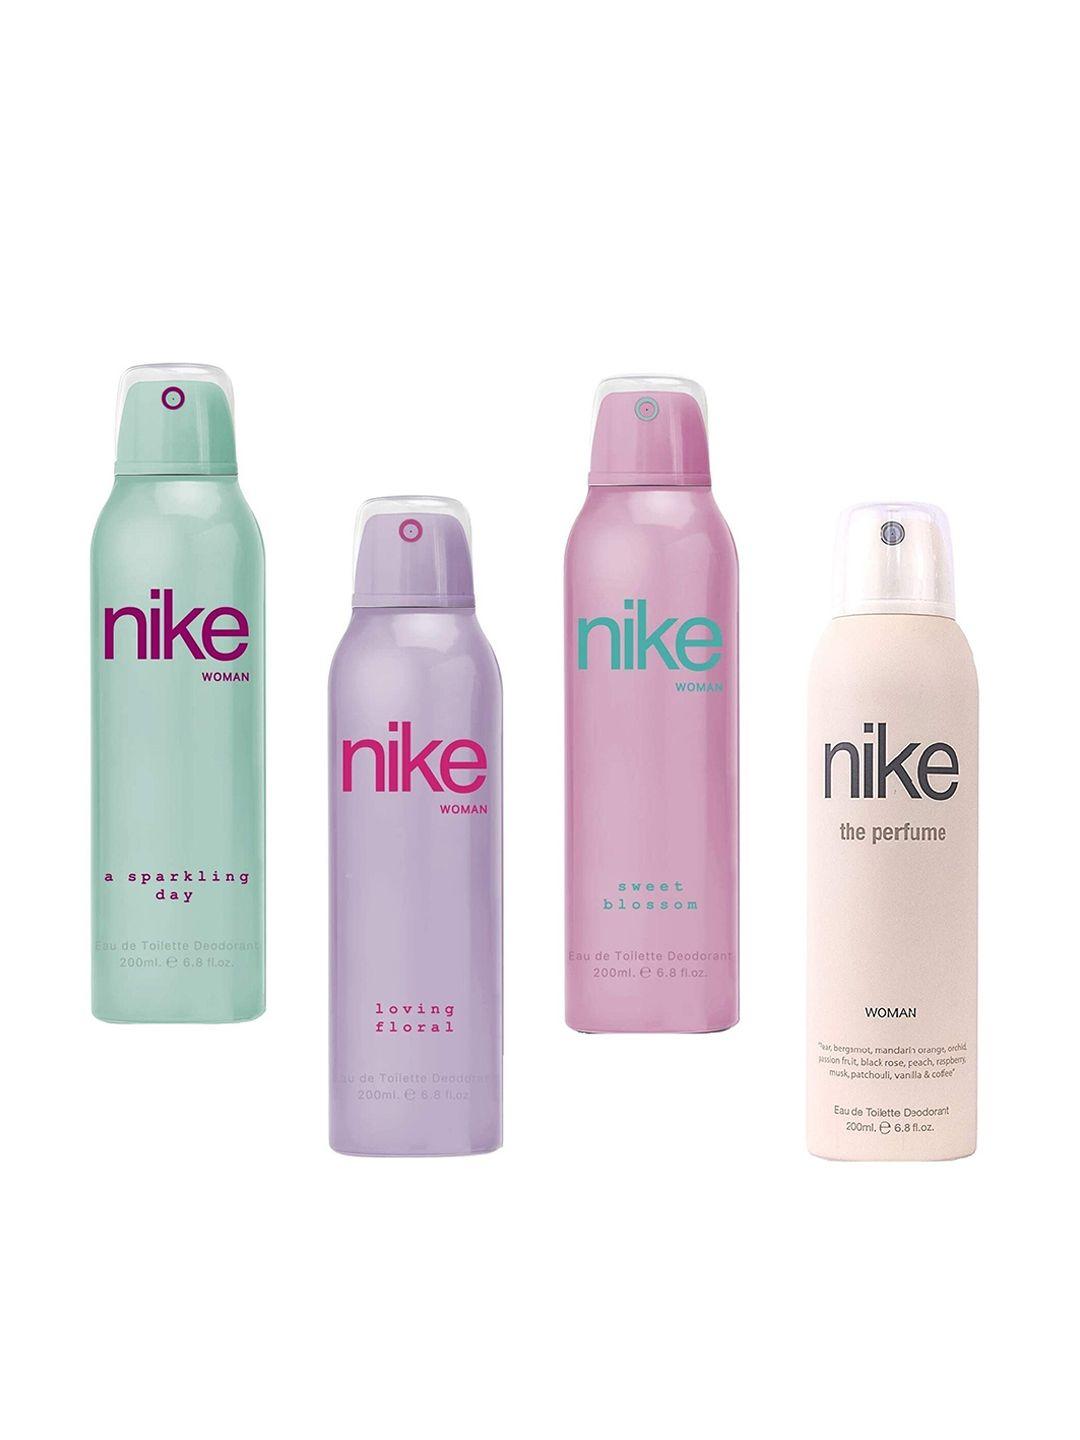 nike women pack of 4 deodorants - 200 ml each